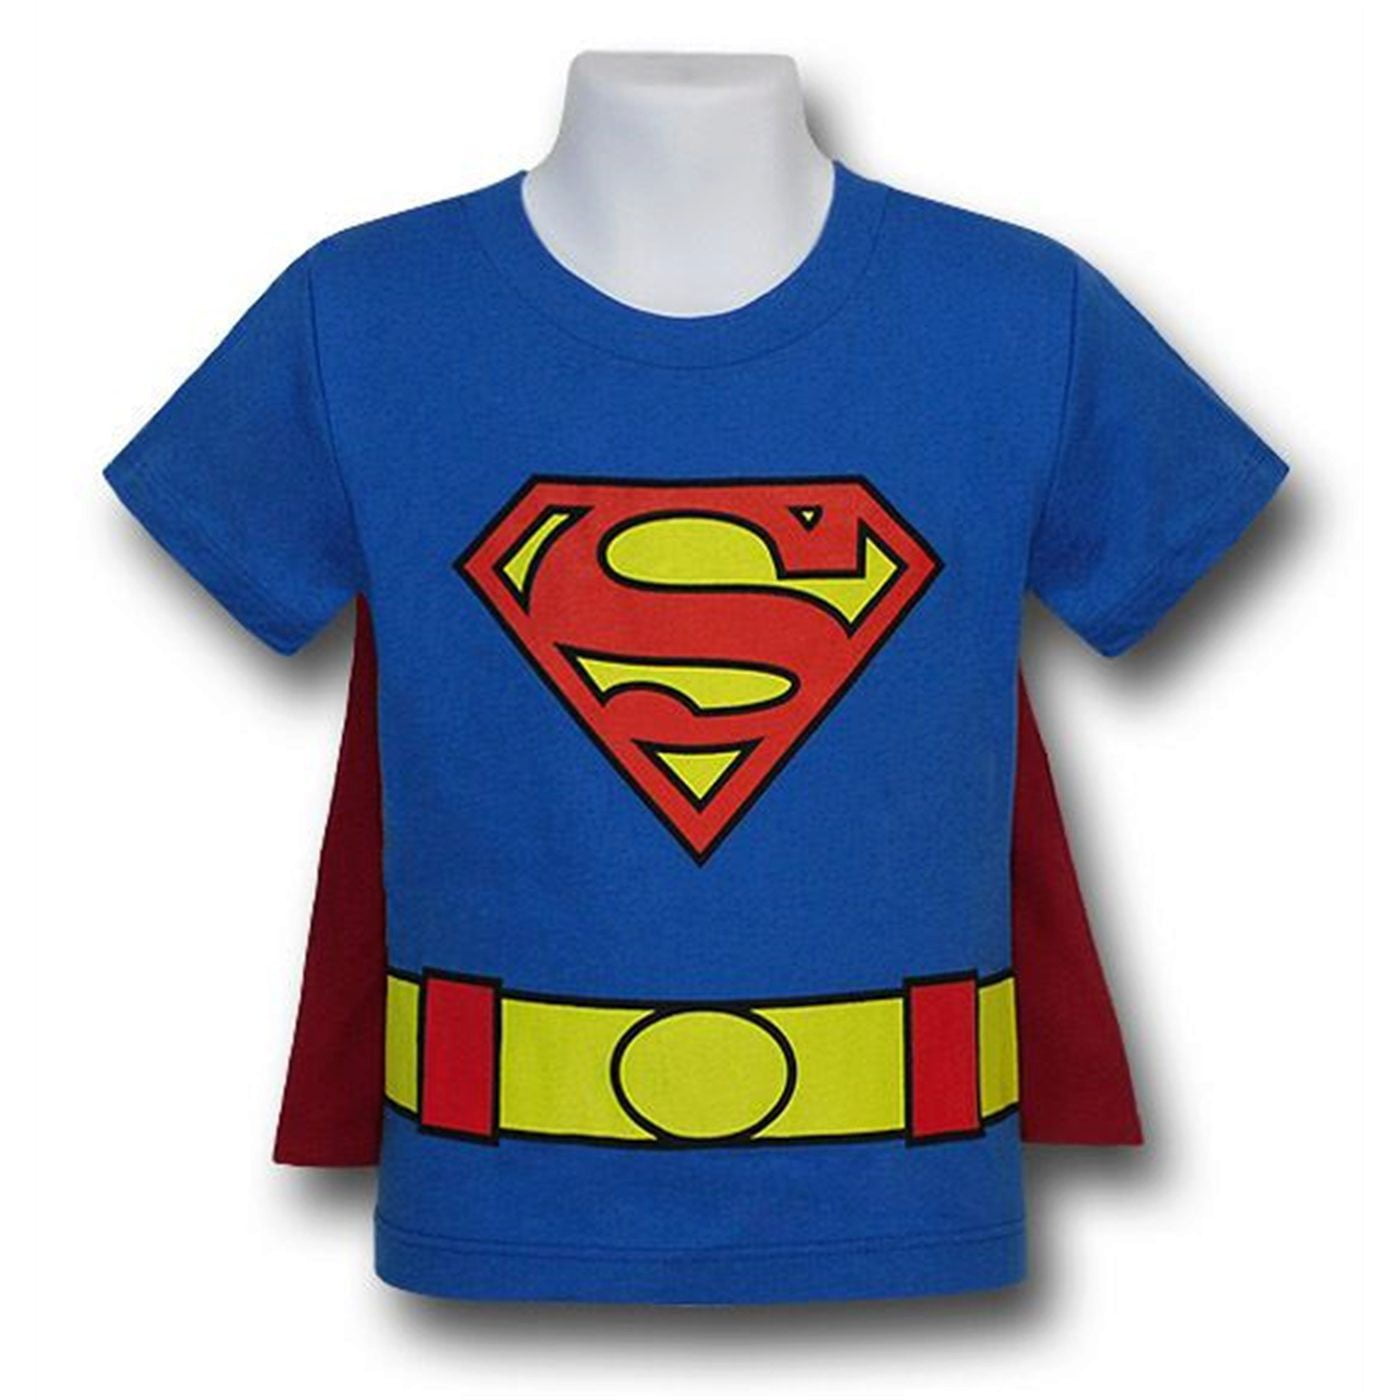 superman t shirt 18 months